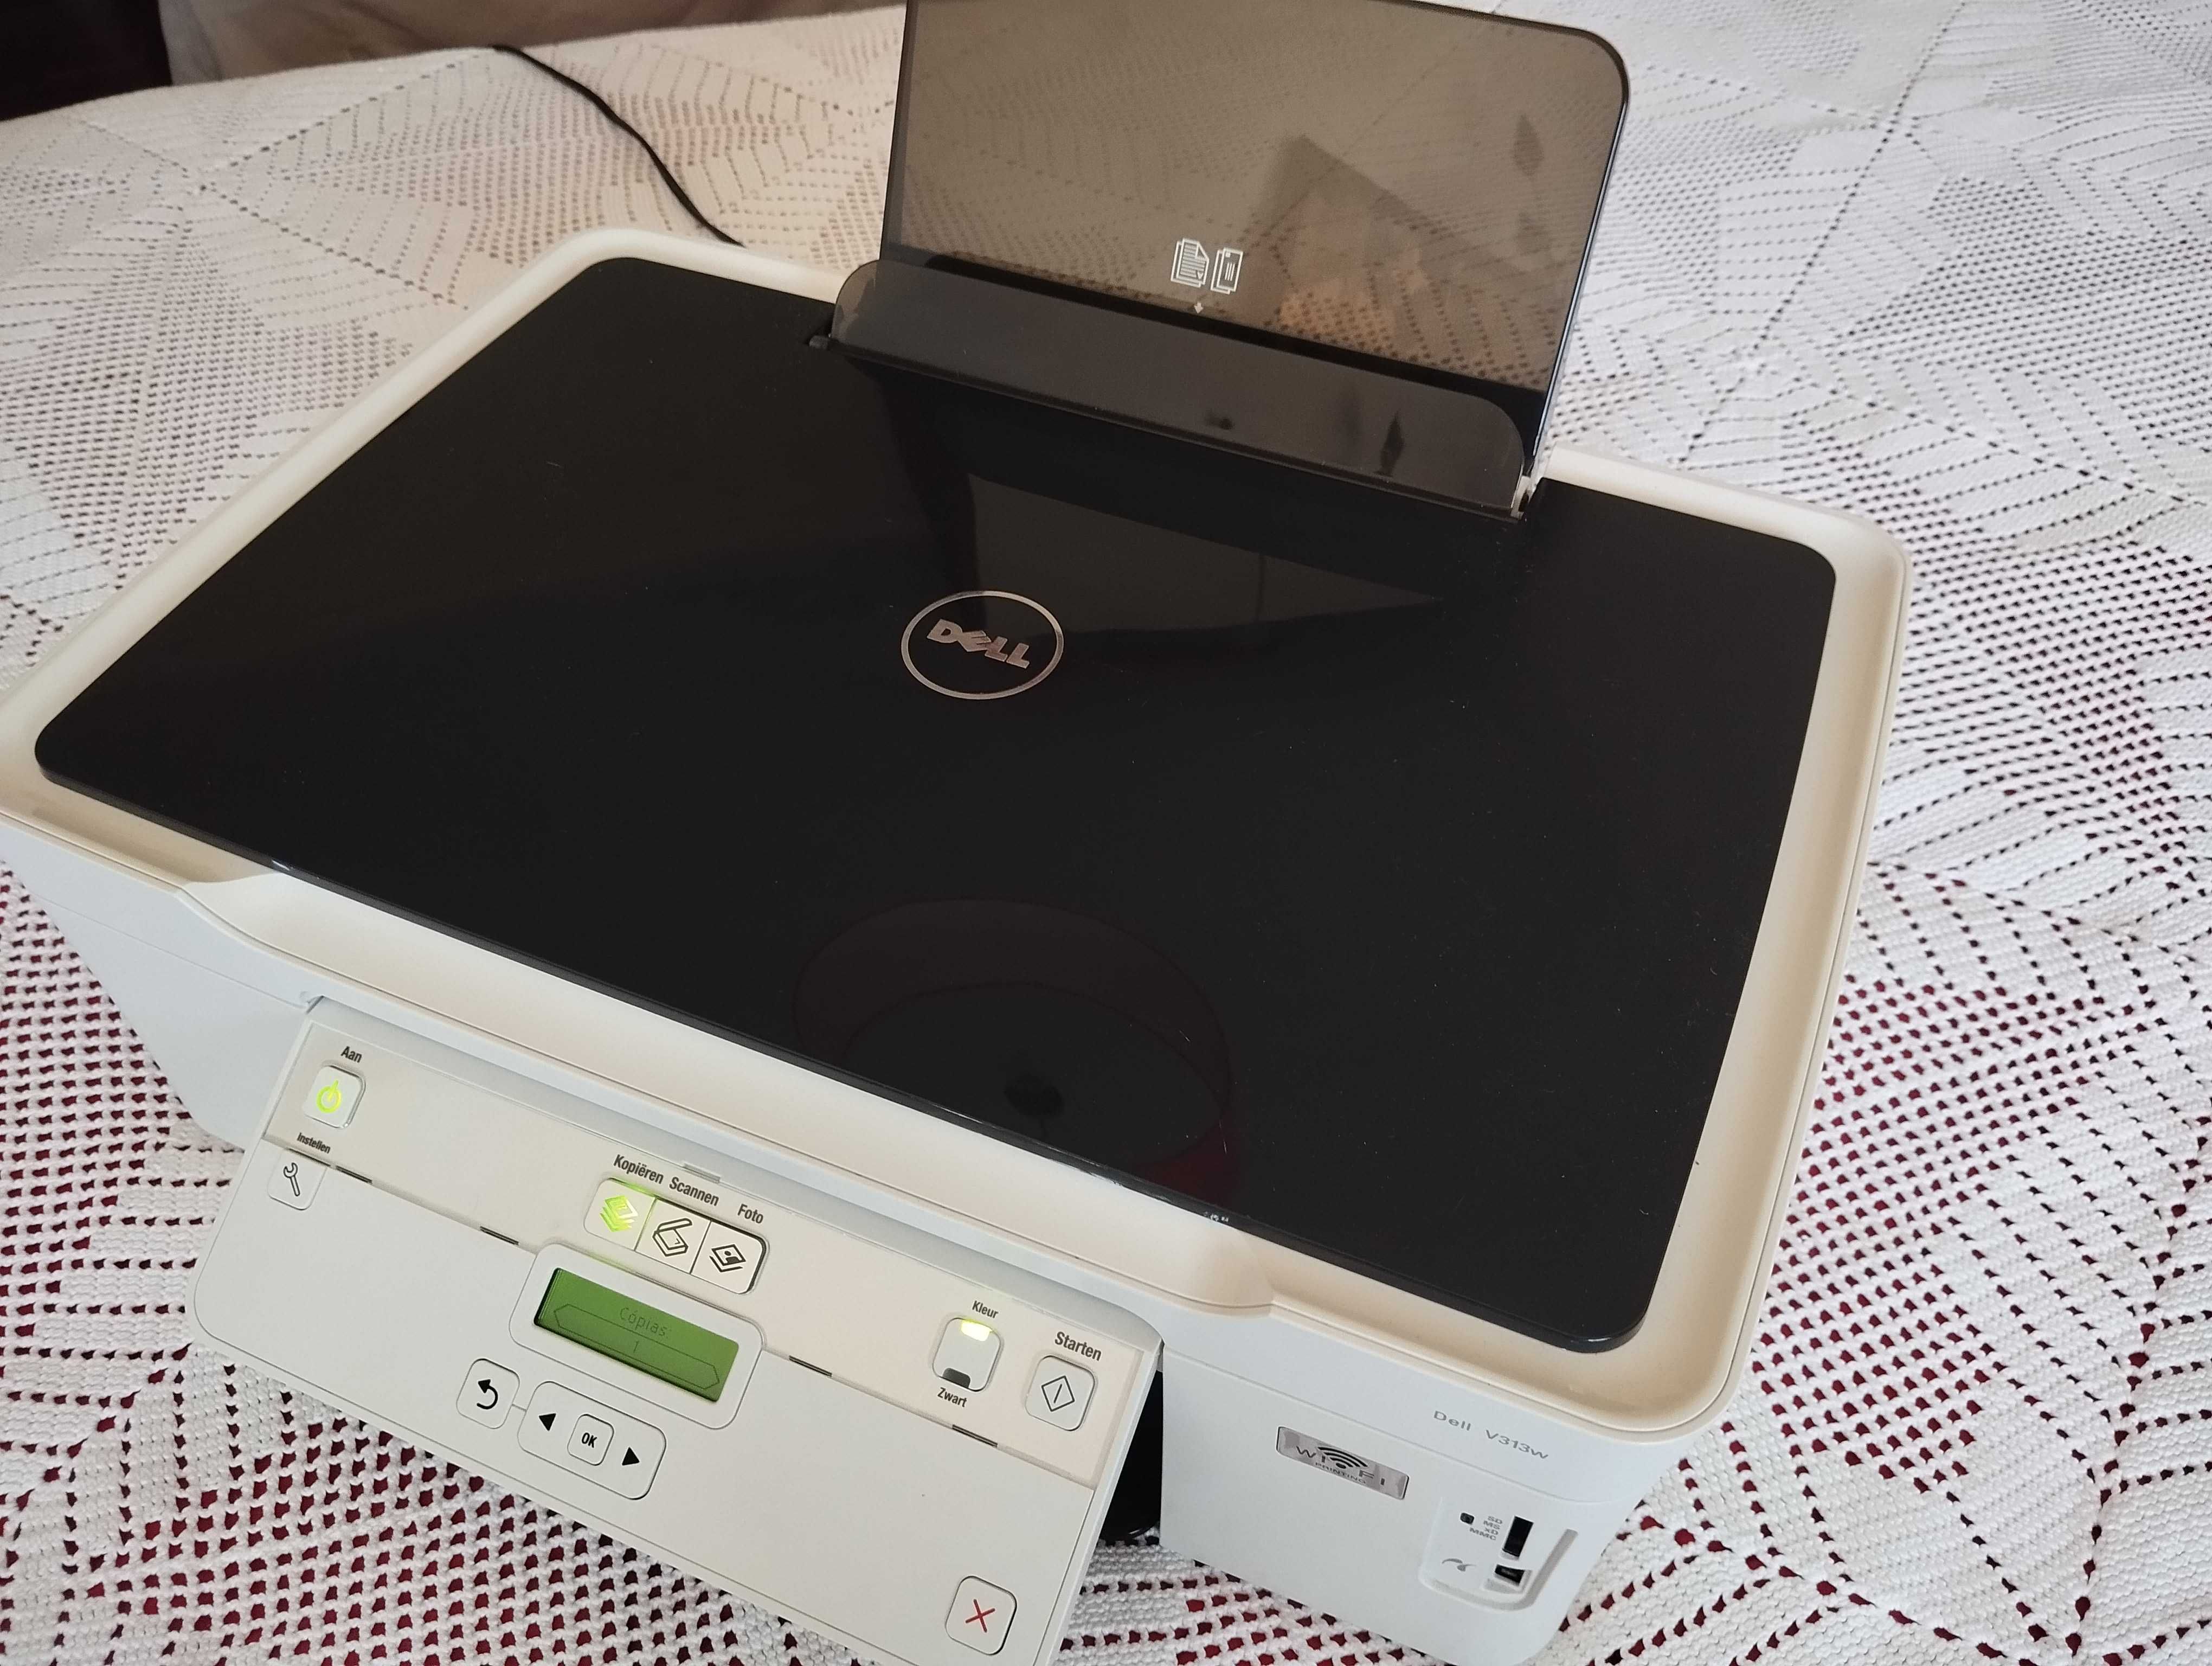 Impressora Dell com Wi-Fi